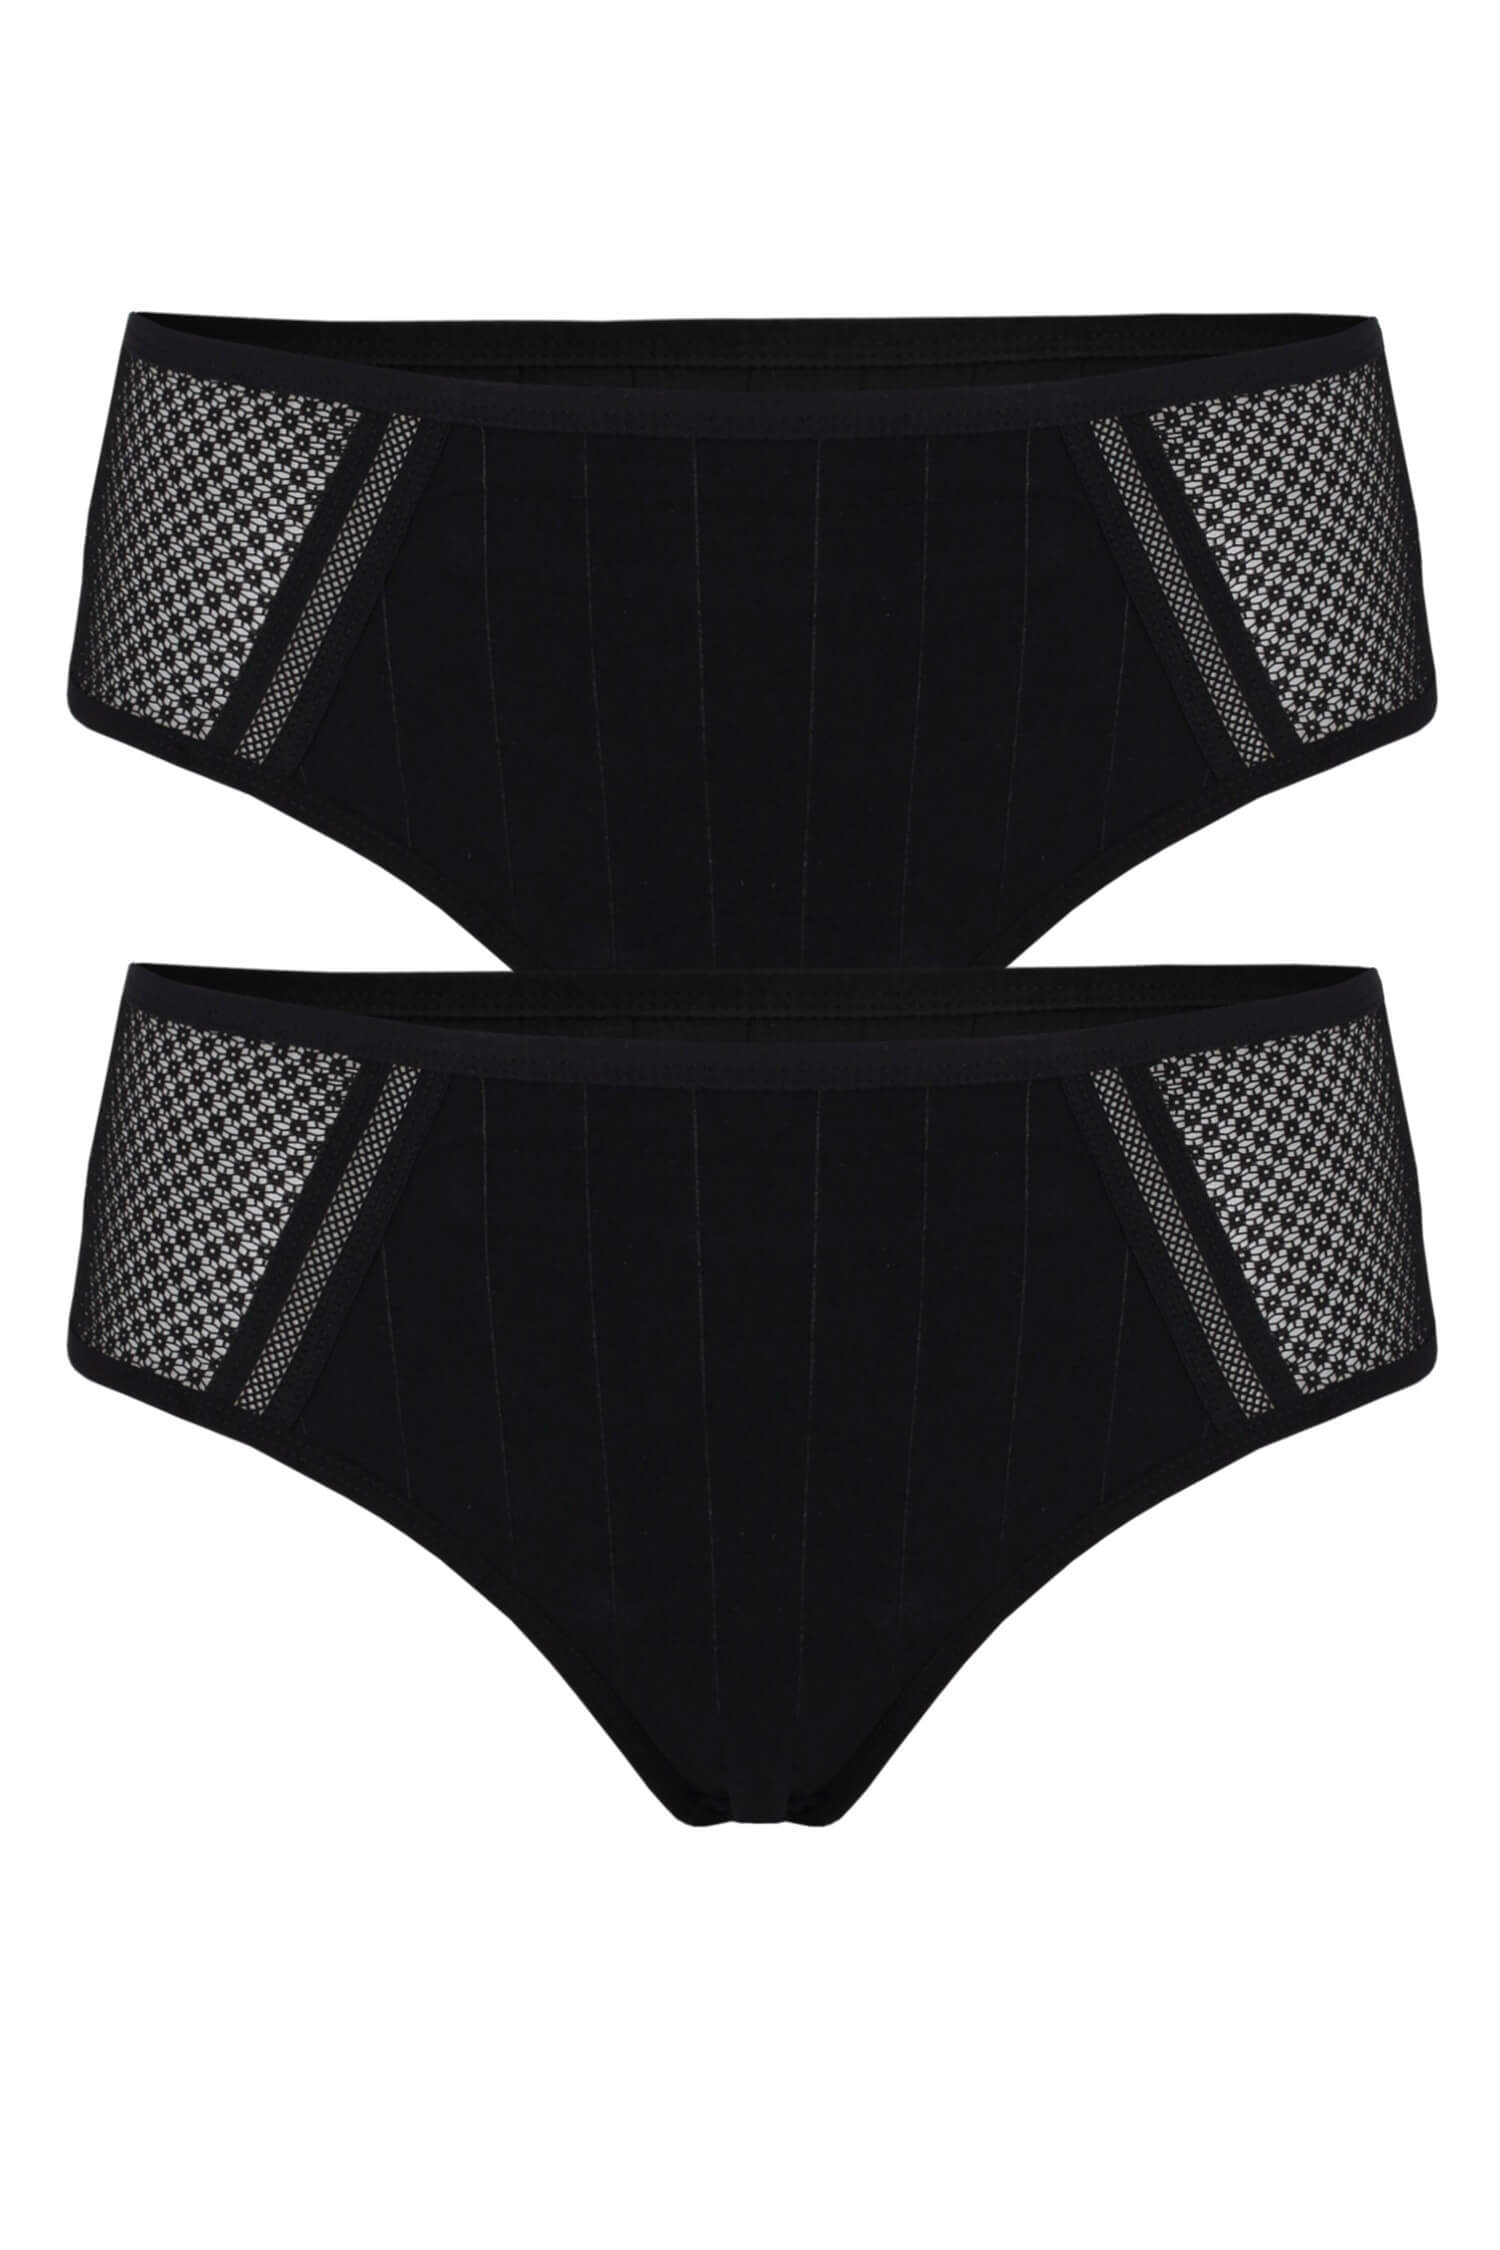 Gala Komfort bavlněné kalhotky D31 - 2bal XL černá